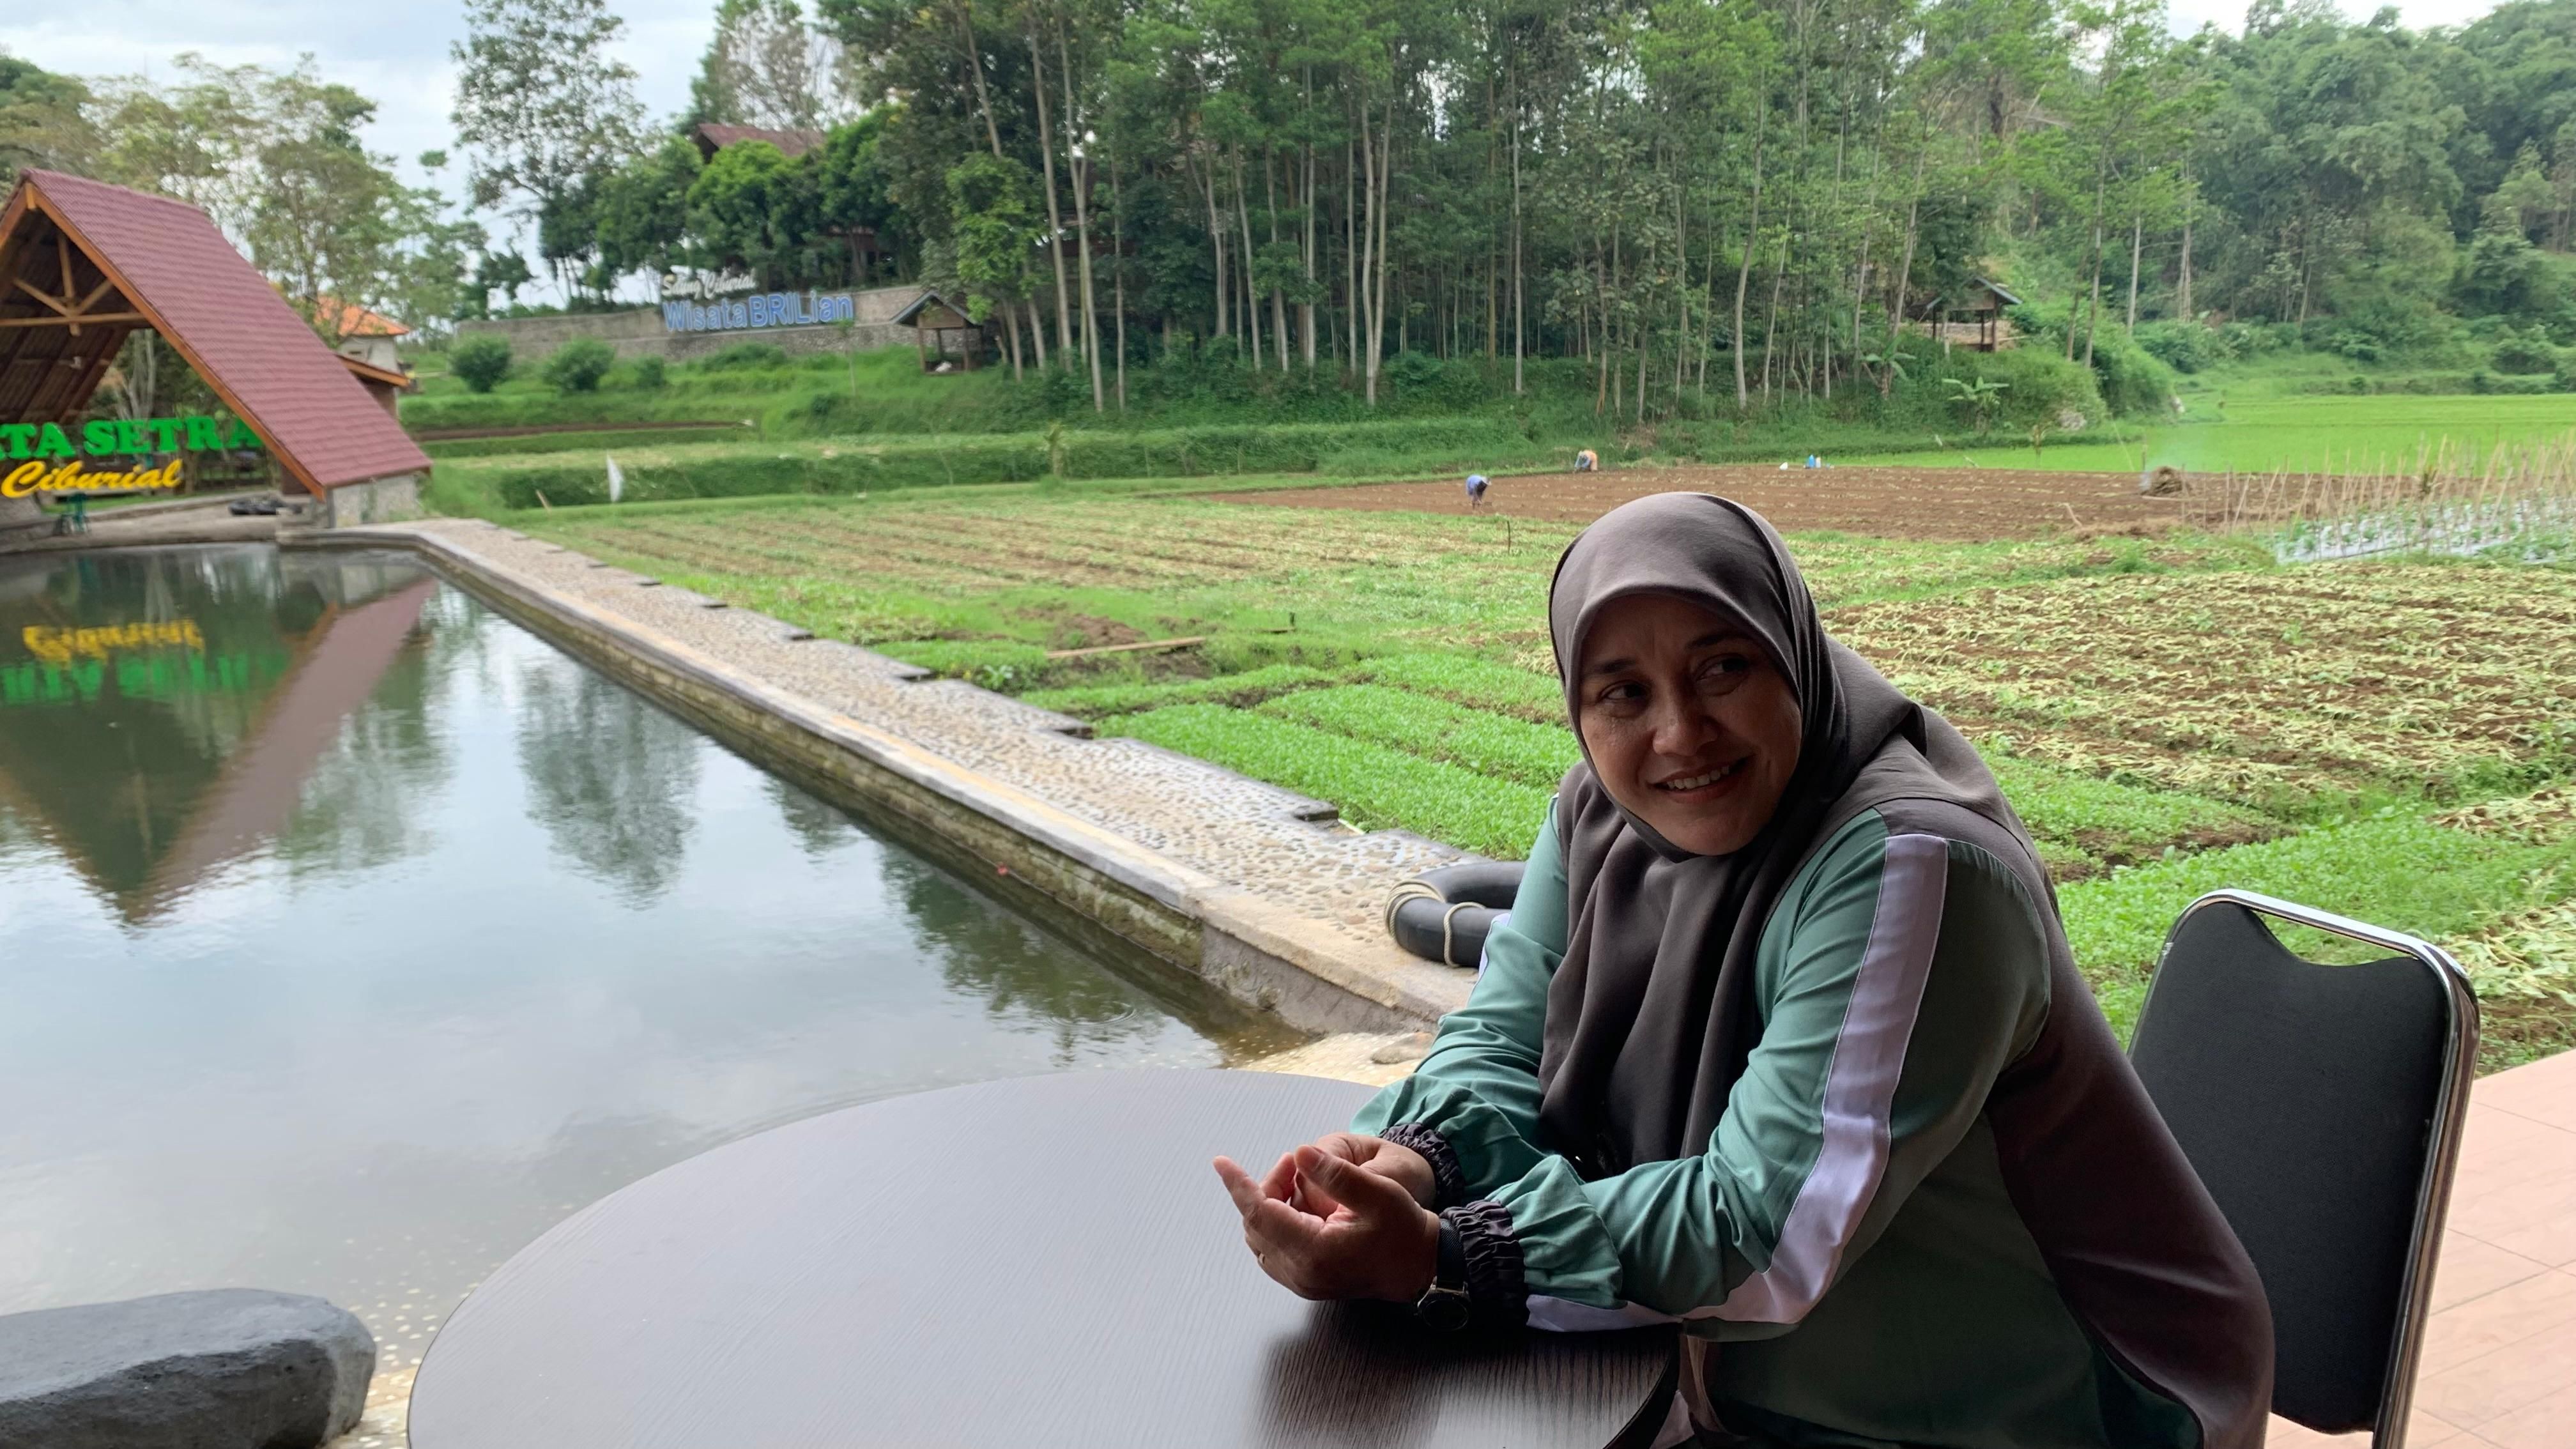 Ketua BUMDes Bina Laksana, Siti Zulaikha mengungkapkan pemberdayaan masyarakat menjadi salah satu penilaian penting saat Desa Sukalaksana menjadi juara 1 Desa BRILian tahun 2021.